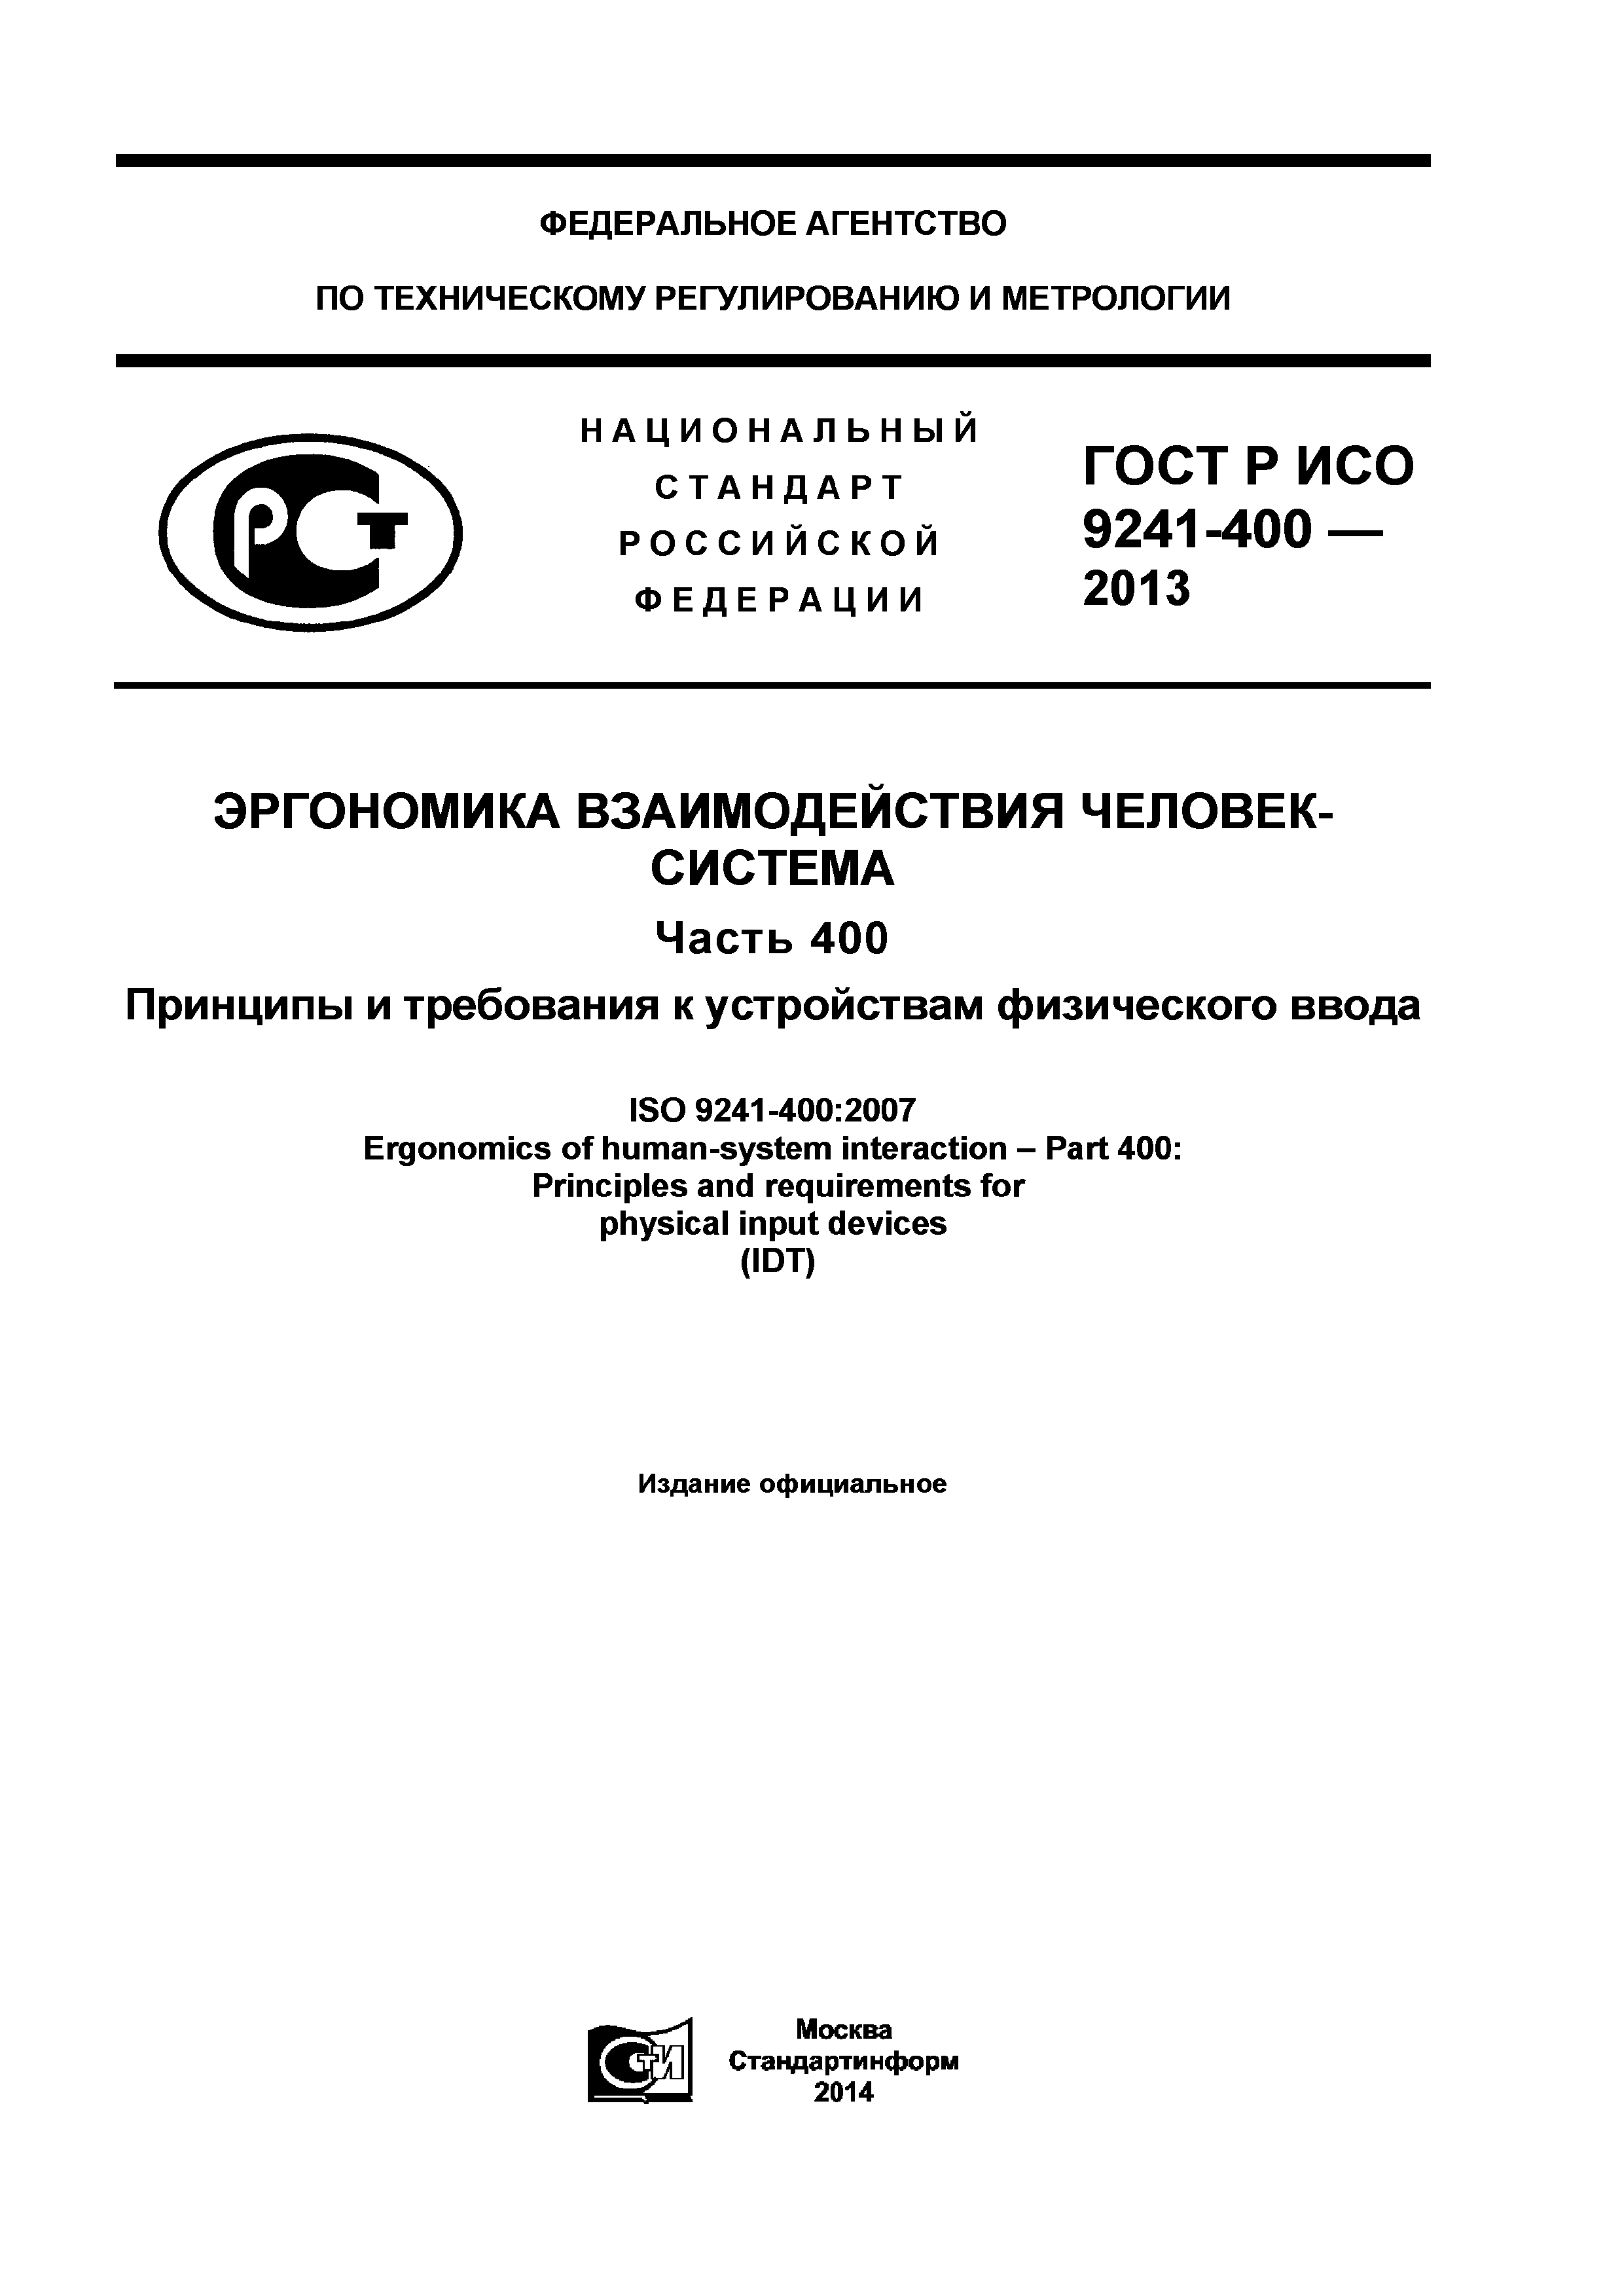 ГОСТ Р ИСО 9241-400-2013